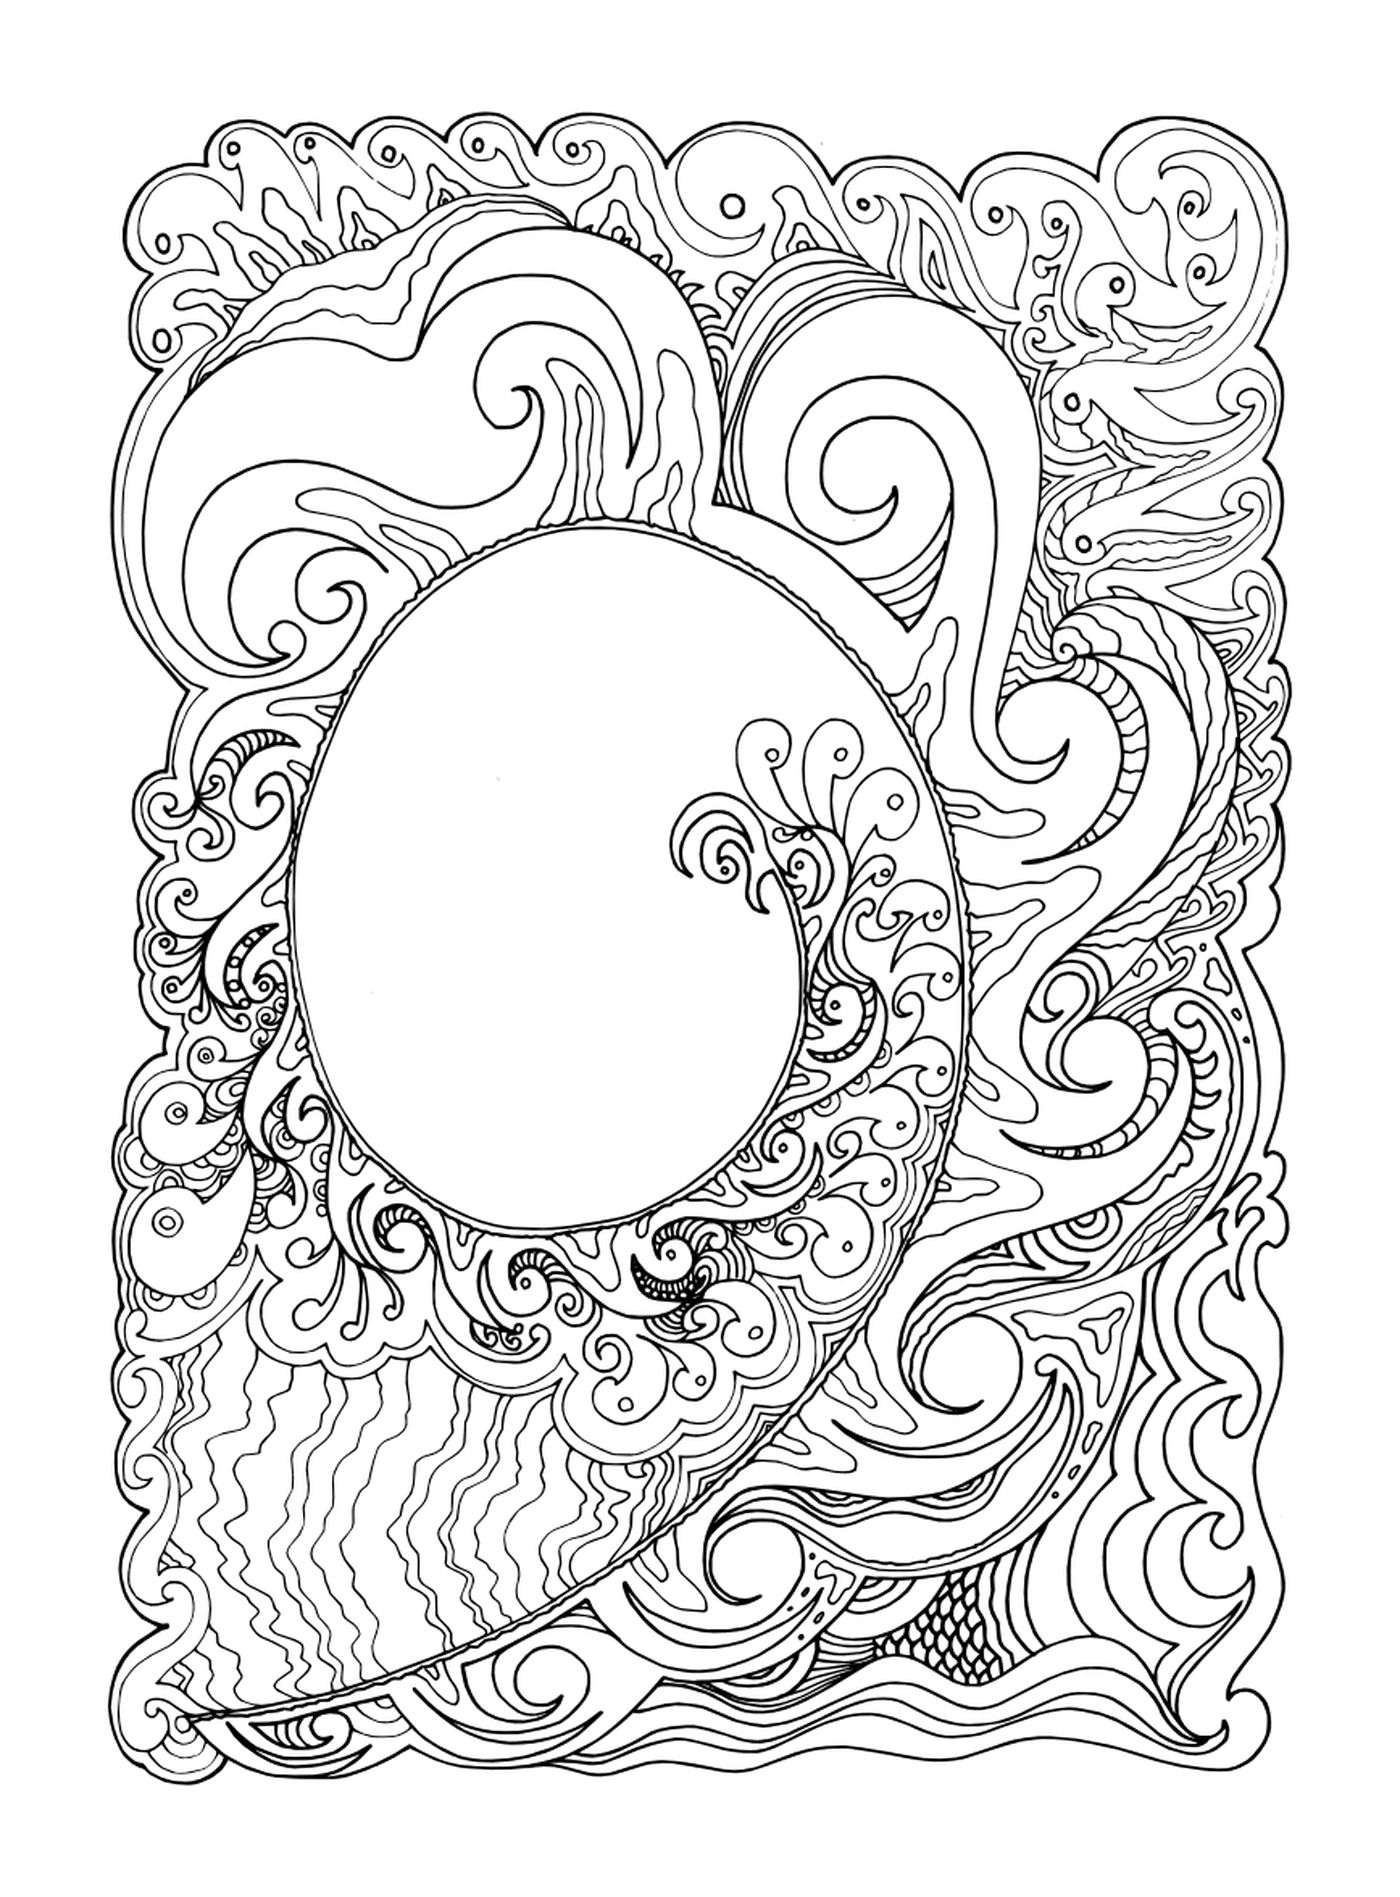   Un cadre ovale avec des motifs tourbillonnants 